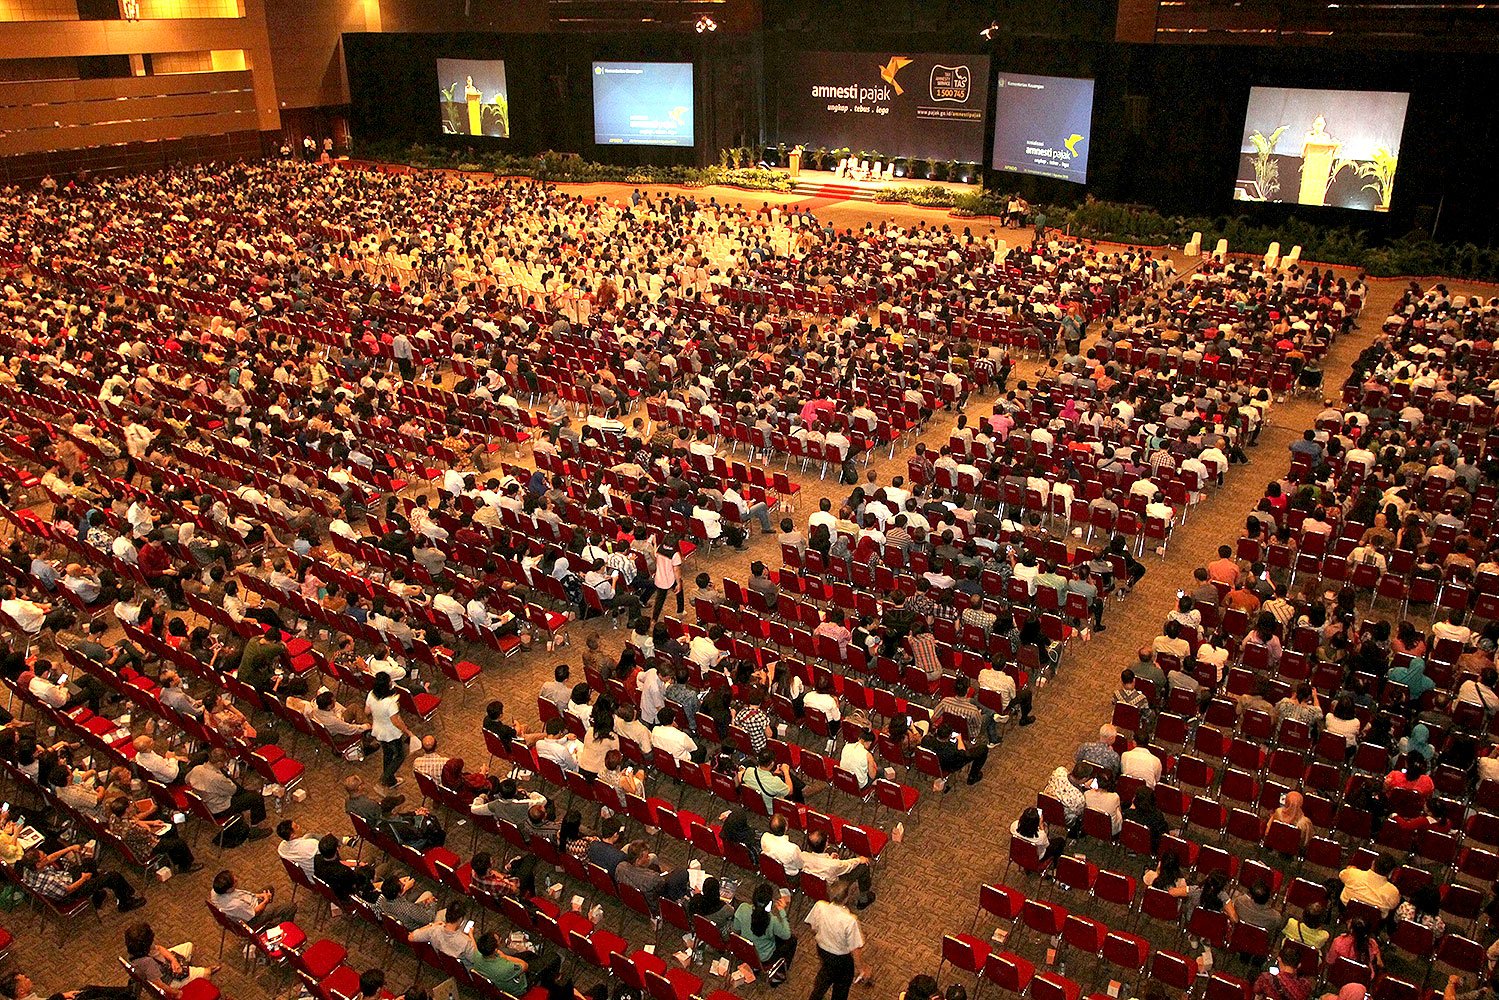 Acara sosialisasi tax amnesty pada 1 Agustus ini di JIExpo, Kemayoran, Jakarta, dihadiri oleh sekitar 10 ribu pengunjung. 